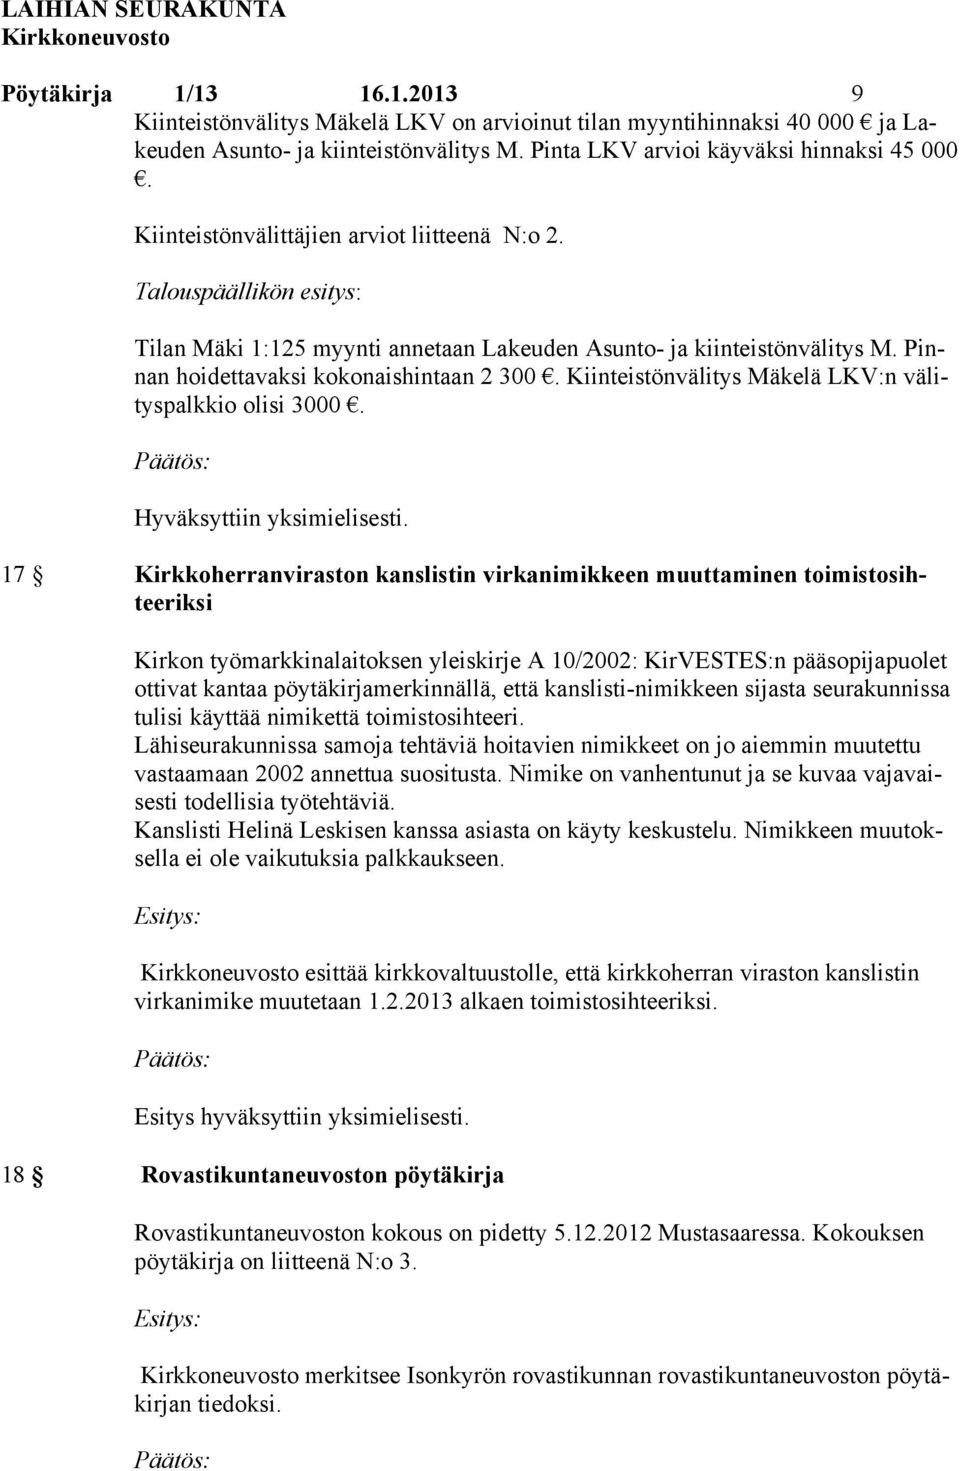 Kiinteistönvälitys Mäkelä LKV:n välityspalkkio olisi 3000. Hyväksyttiin yksimielisesti.